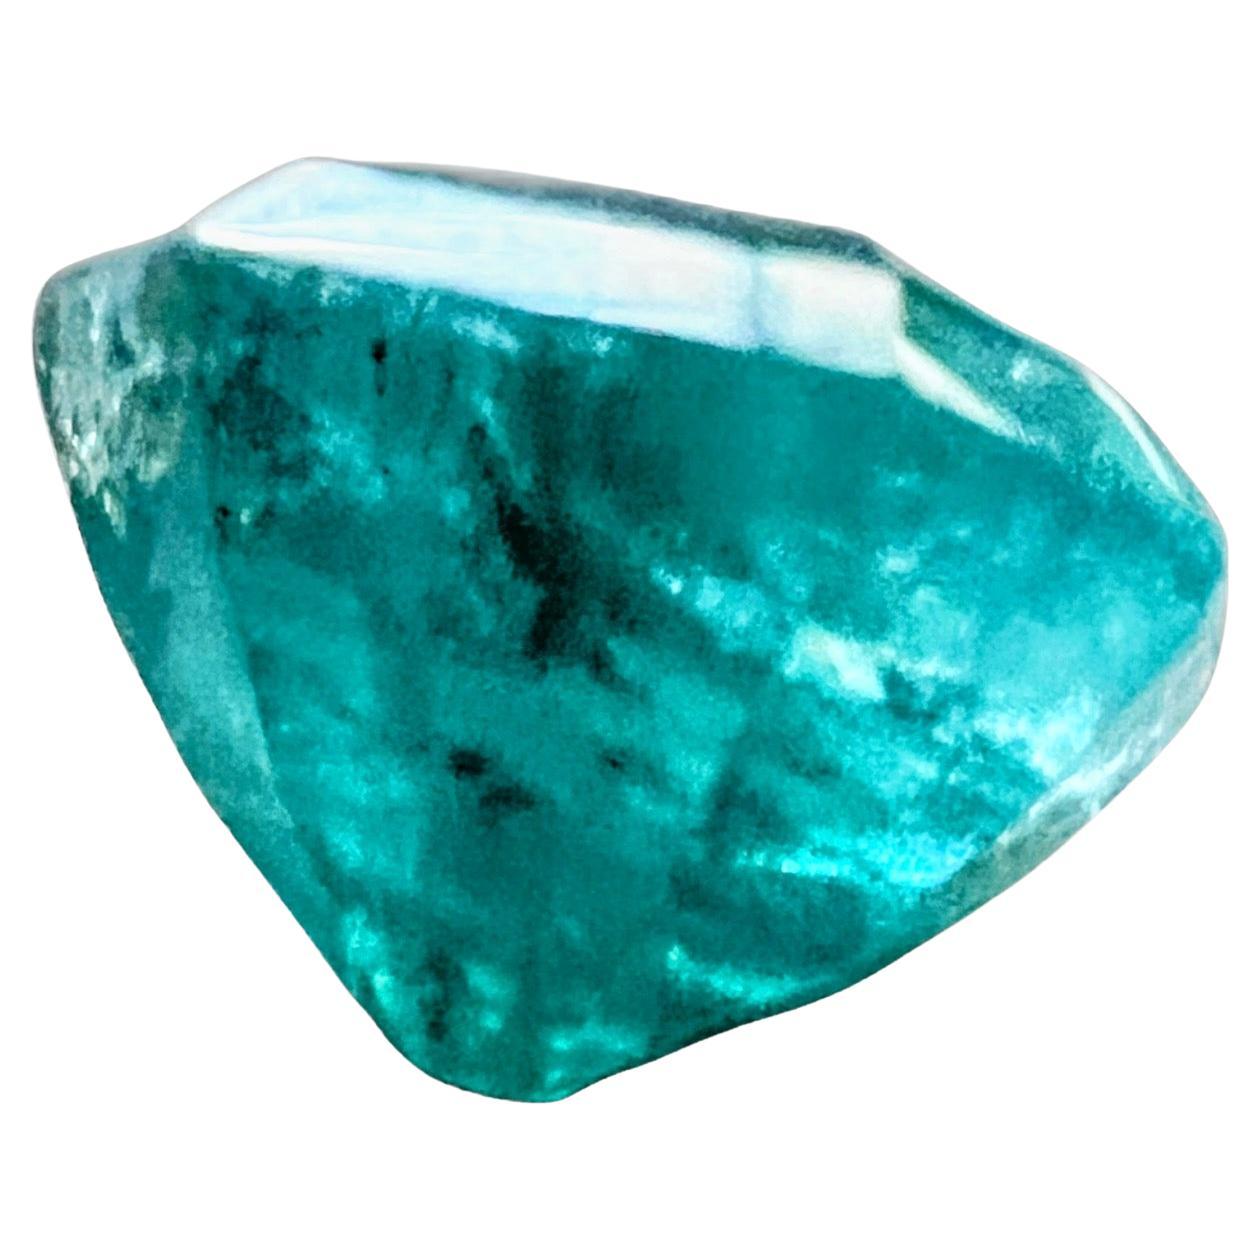 Octagon Cut 4.55ct Octagonal Cut No-Oil Untreated Emerald Gemstone For Sale